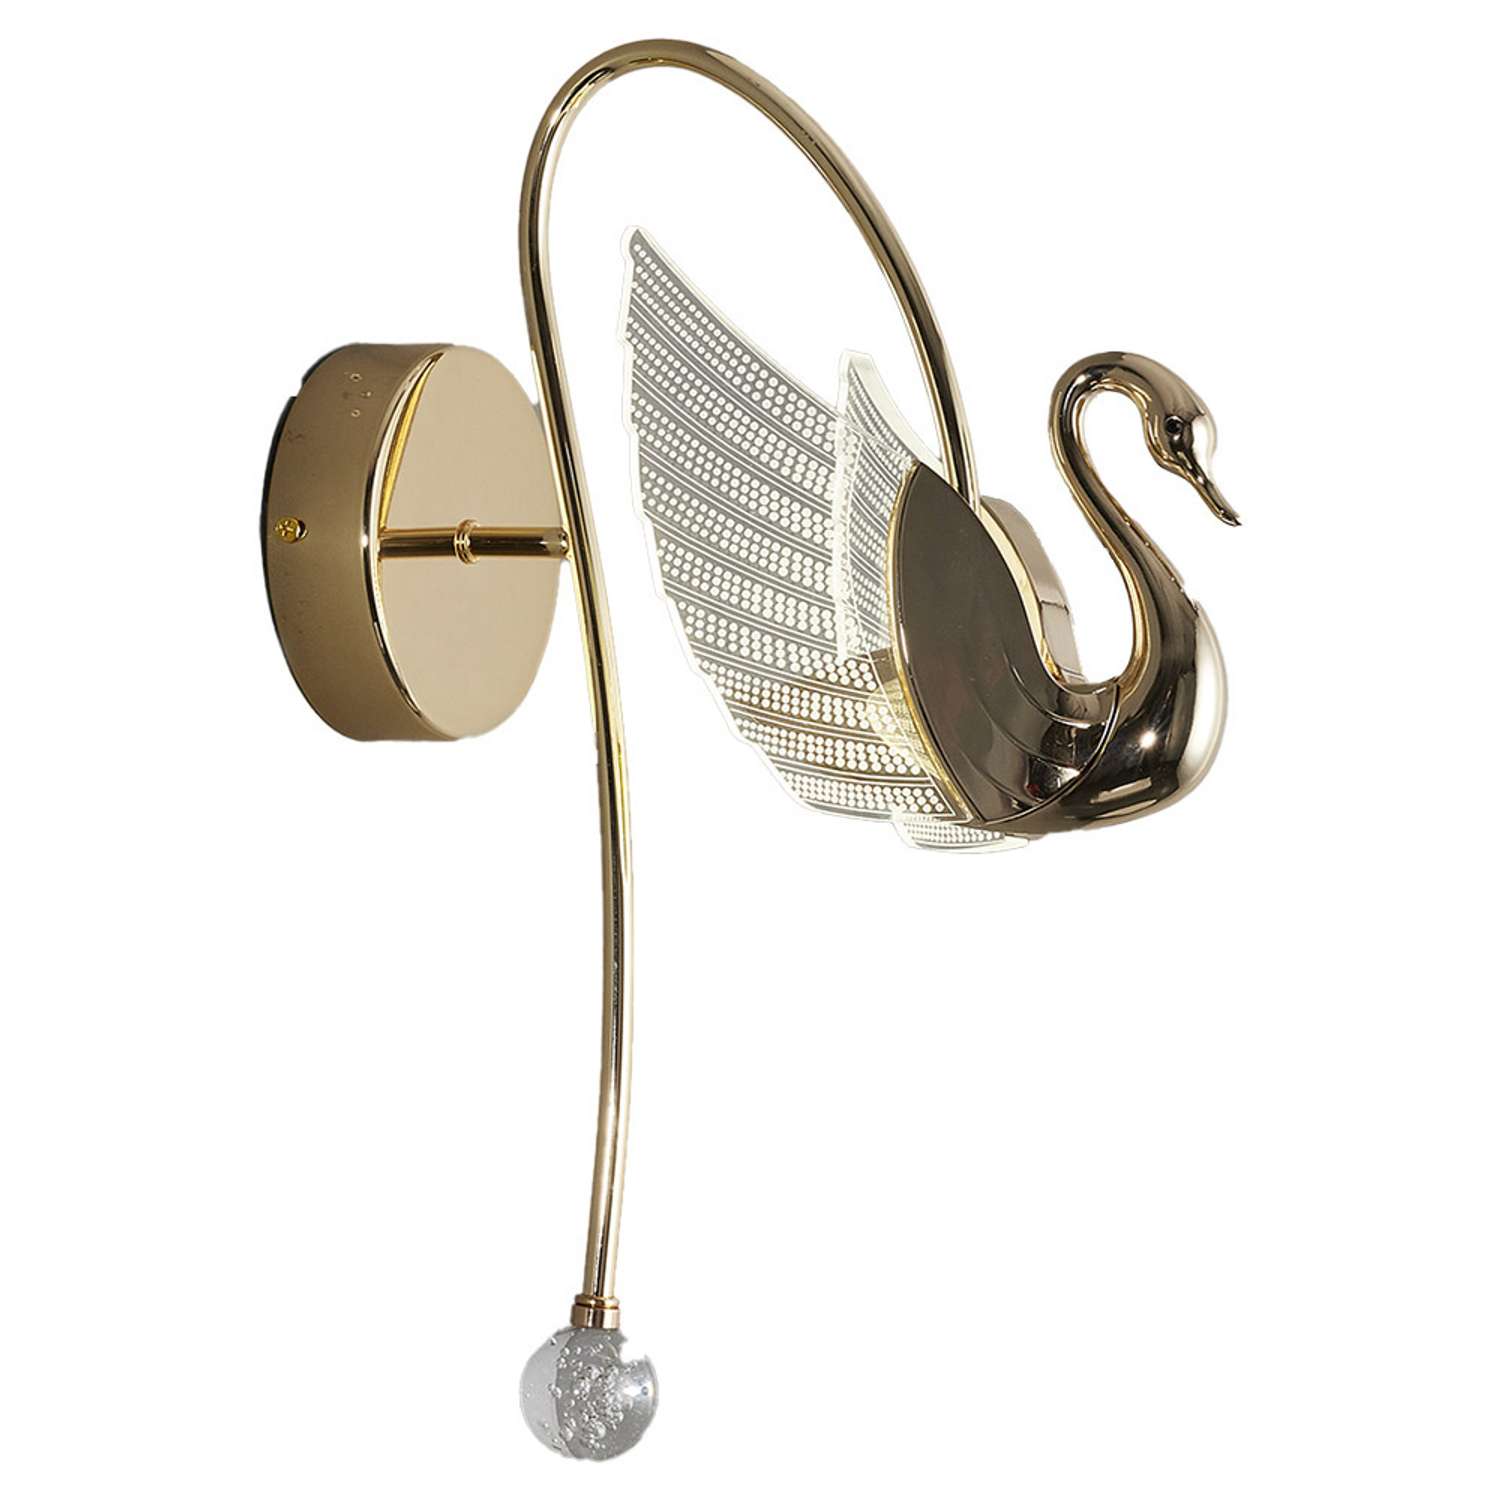 Настенный светильник LLL KW7037 золотой Птицы с вращением на 360 градусов - фото 1